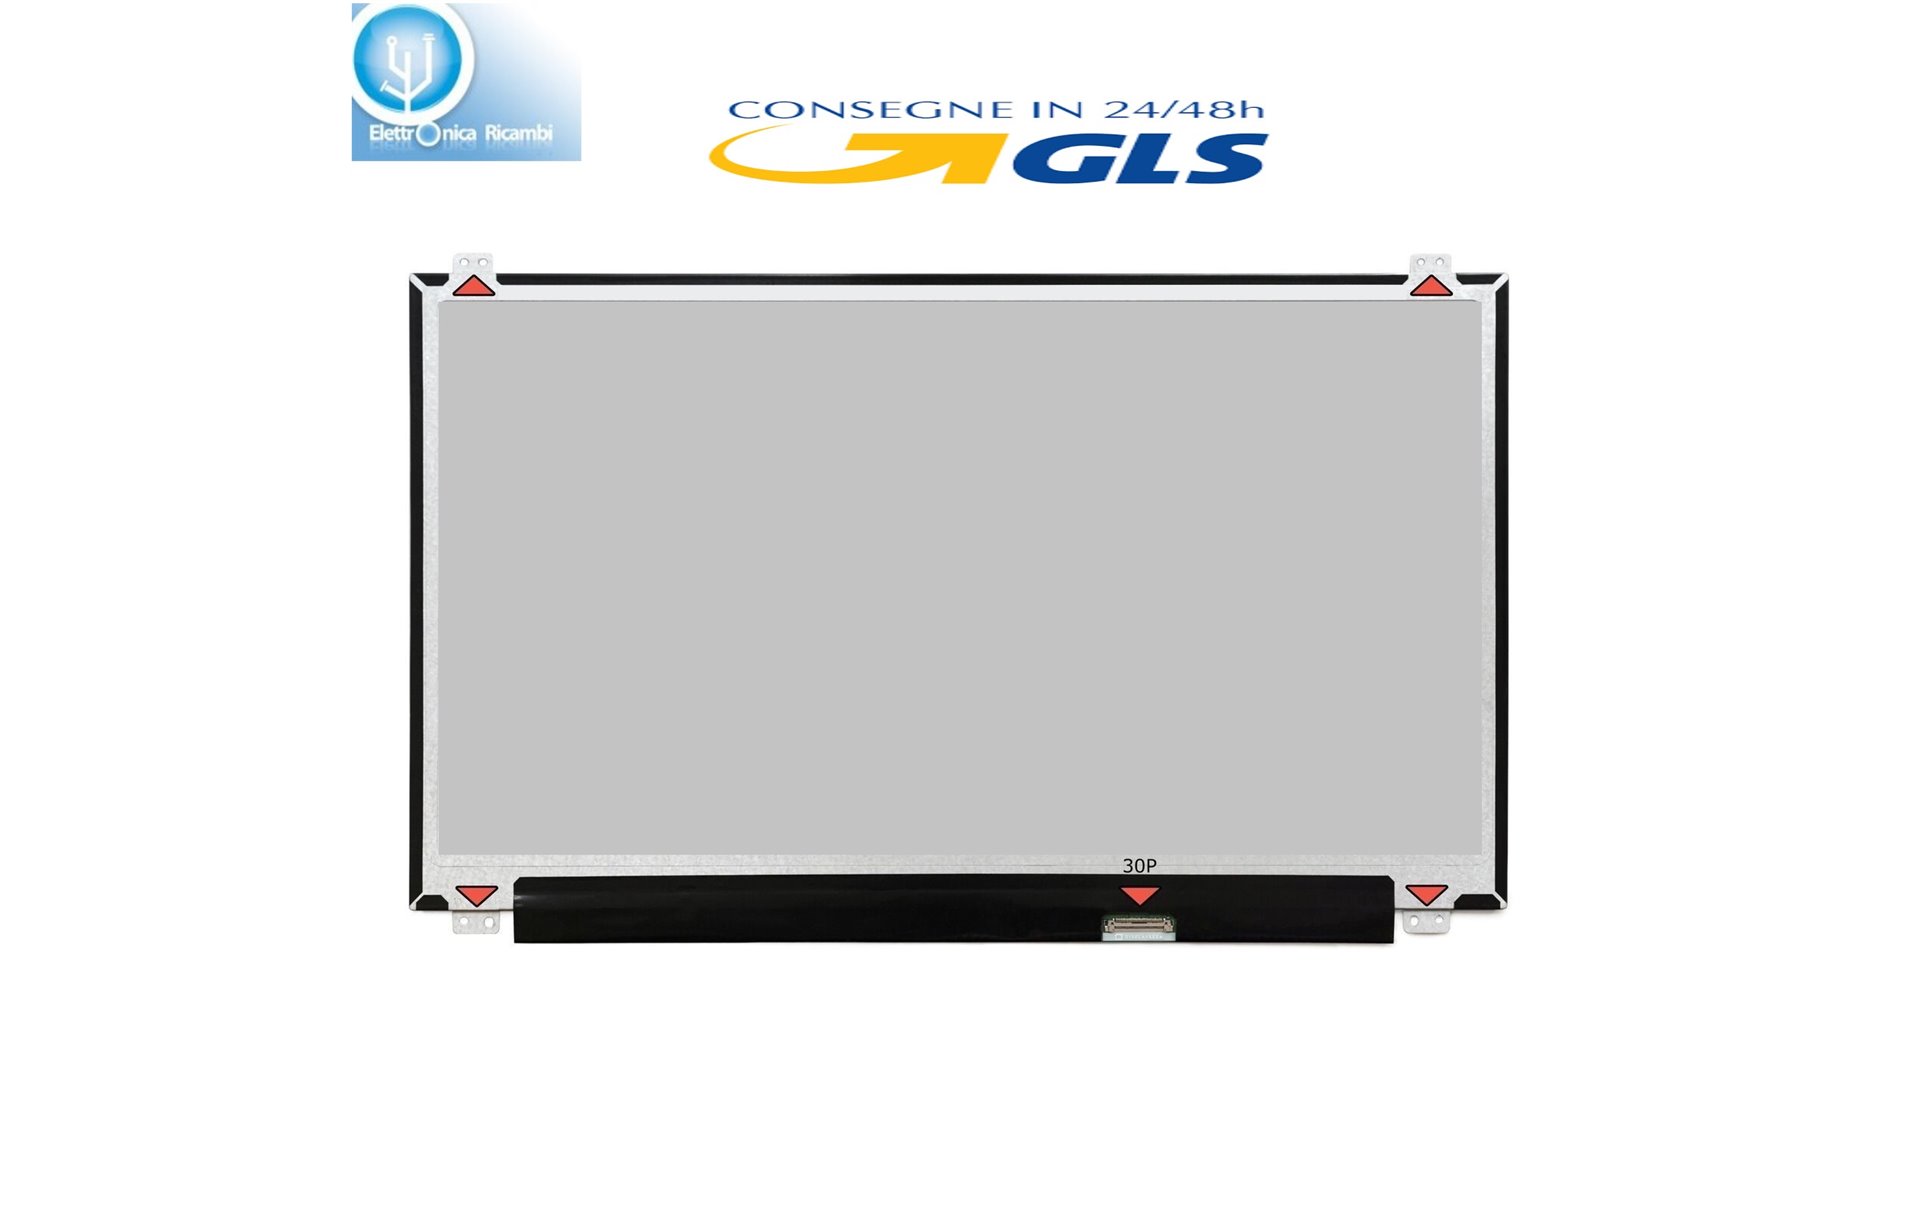 DISPLAY LCD ASUS ROG GL550JK-CN SERIES 15.6 1920x1080 LED 30 pin